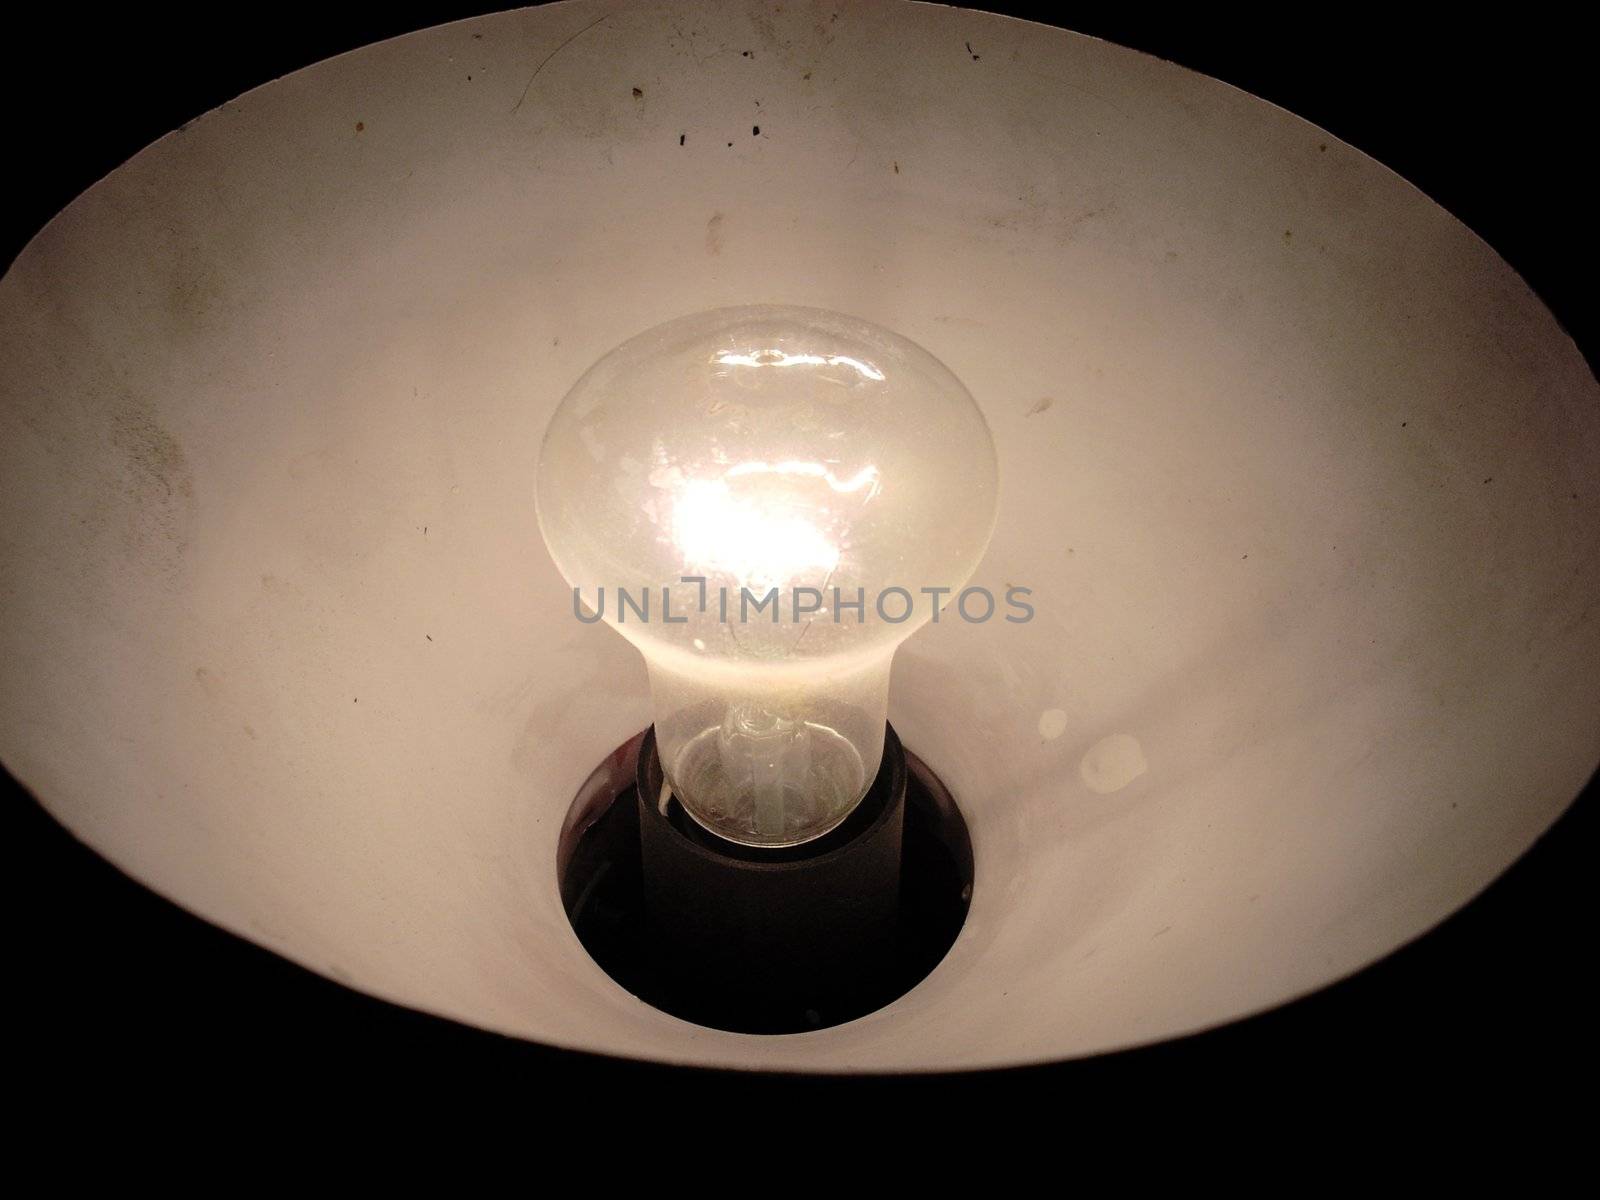 A photograph of lightening filament lamp